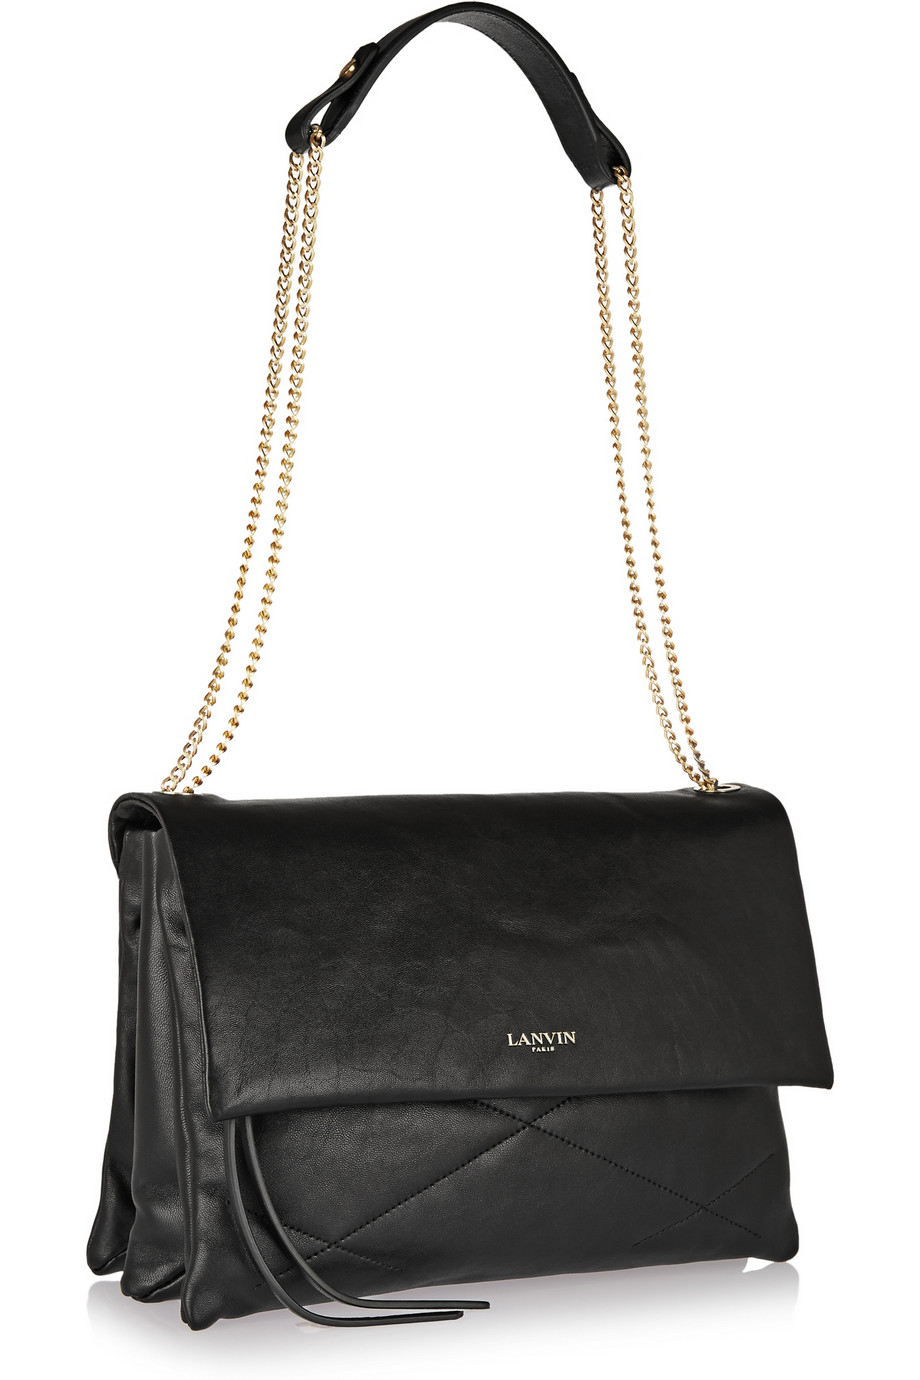 Lyst - Lanvin Sugar Quilted Leather Shoulder Bag in Black